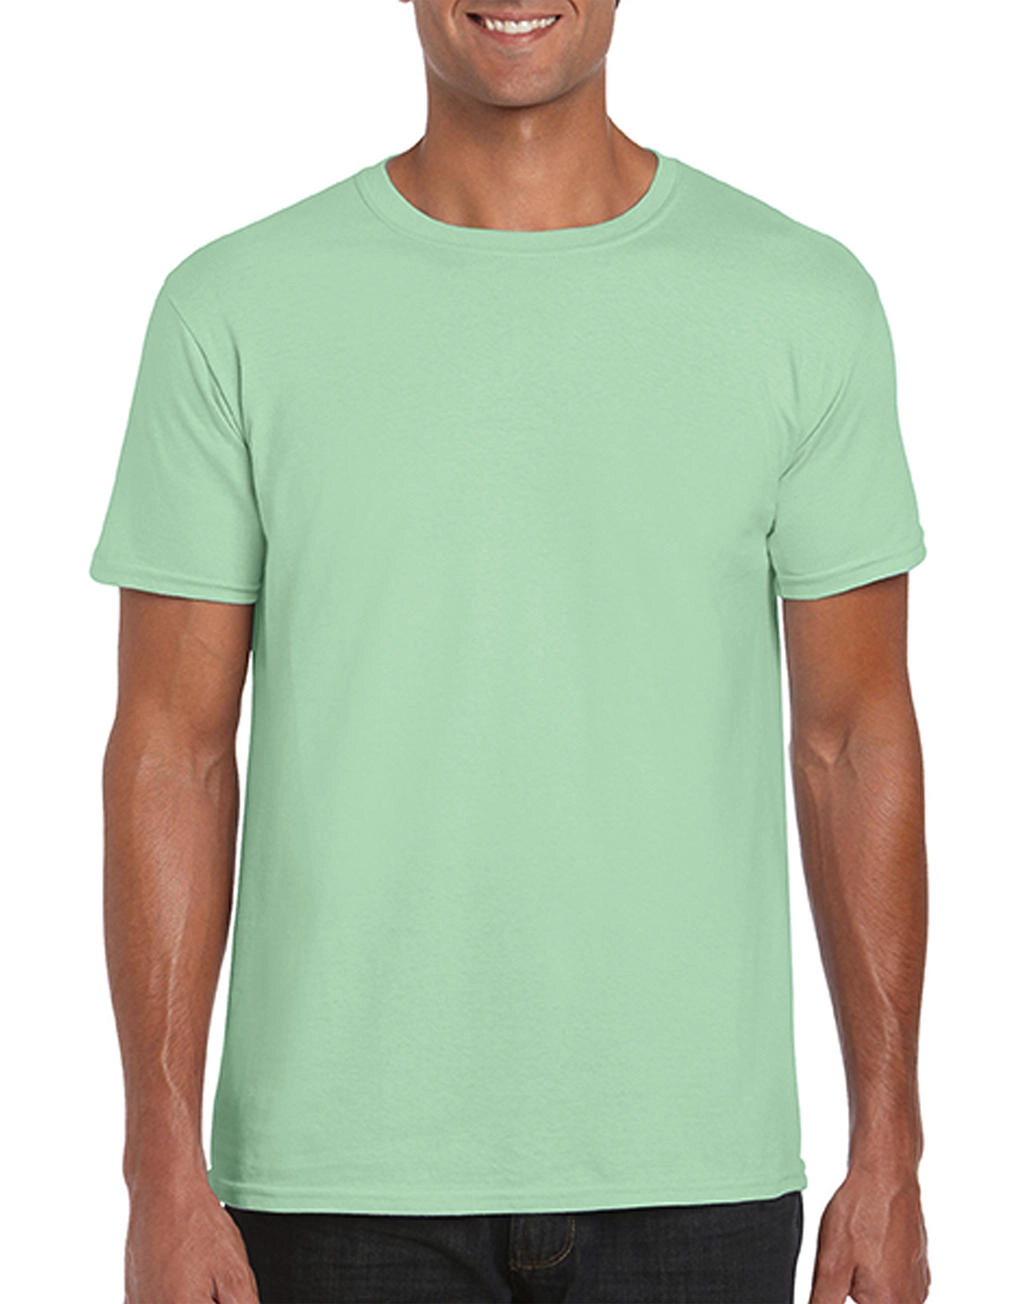 Softstyle® Ring Spun T-Shirt zum Besticken und Bedrucken in der Farbe Mint Green mit Ihren Logo, Schriftzug oder Motiv.